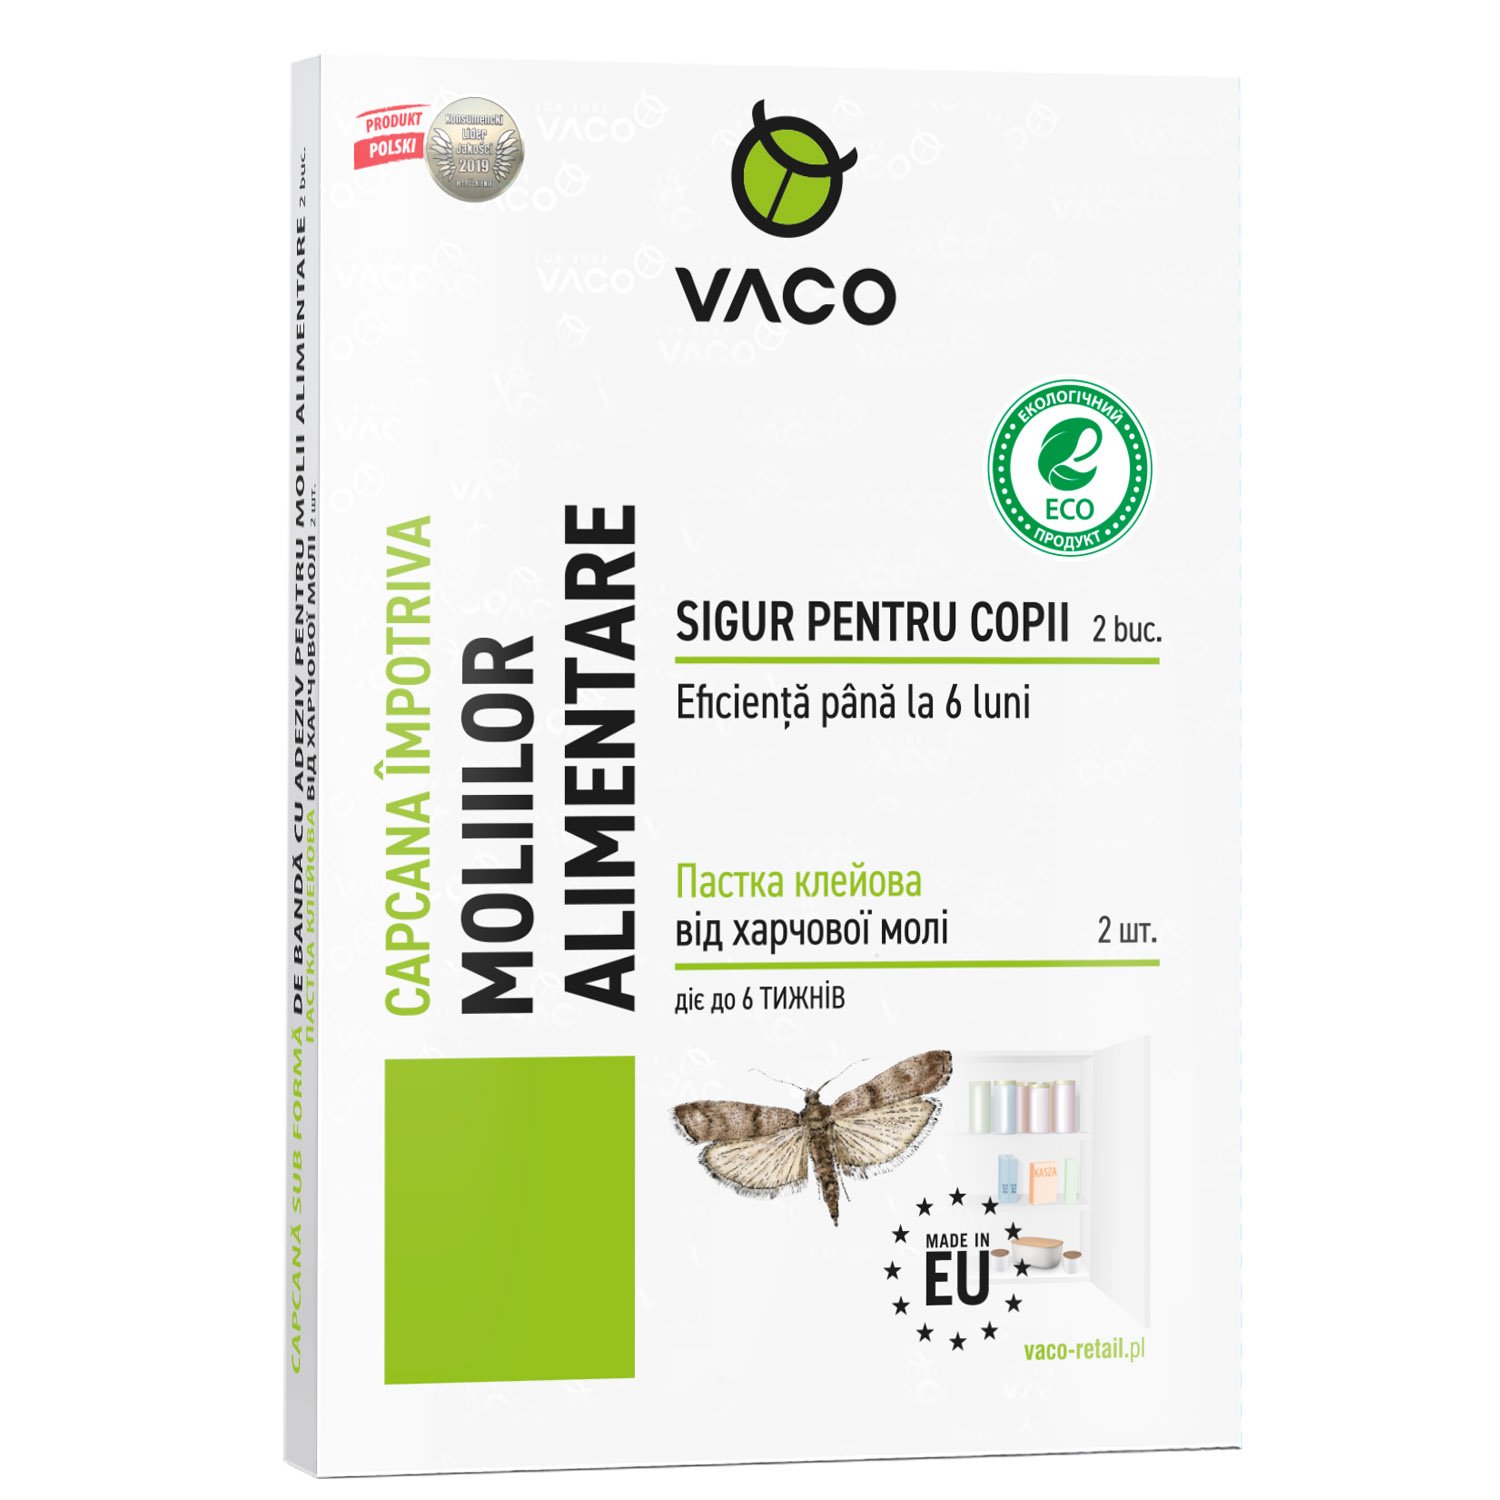 Пастка клейова Vaco Eco від харчової молі, 2 шт. - фото 1